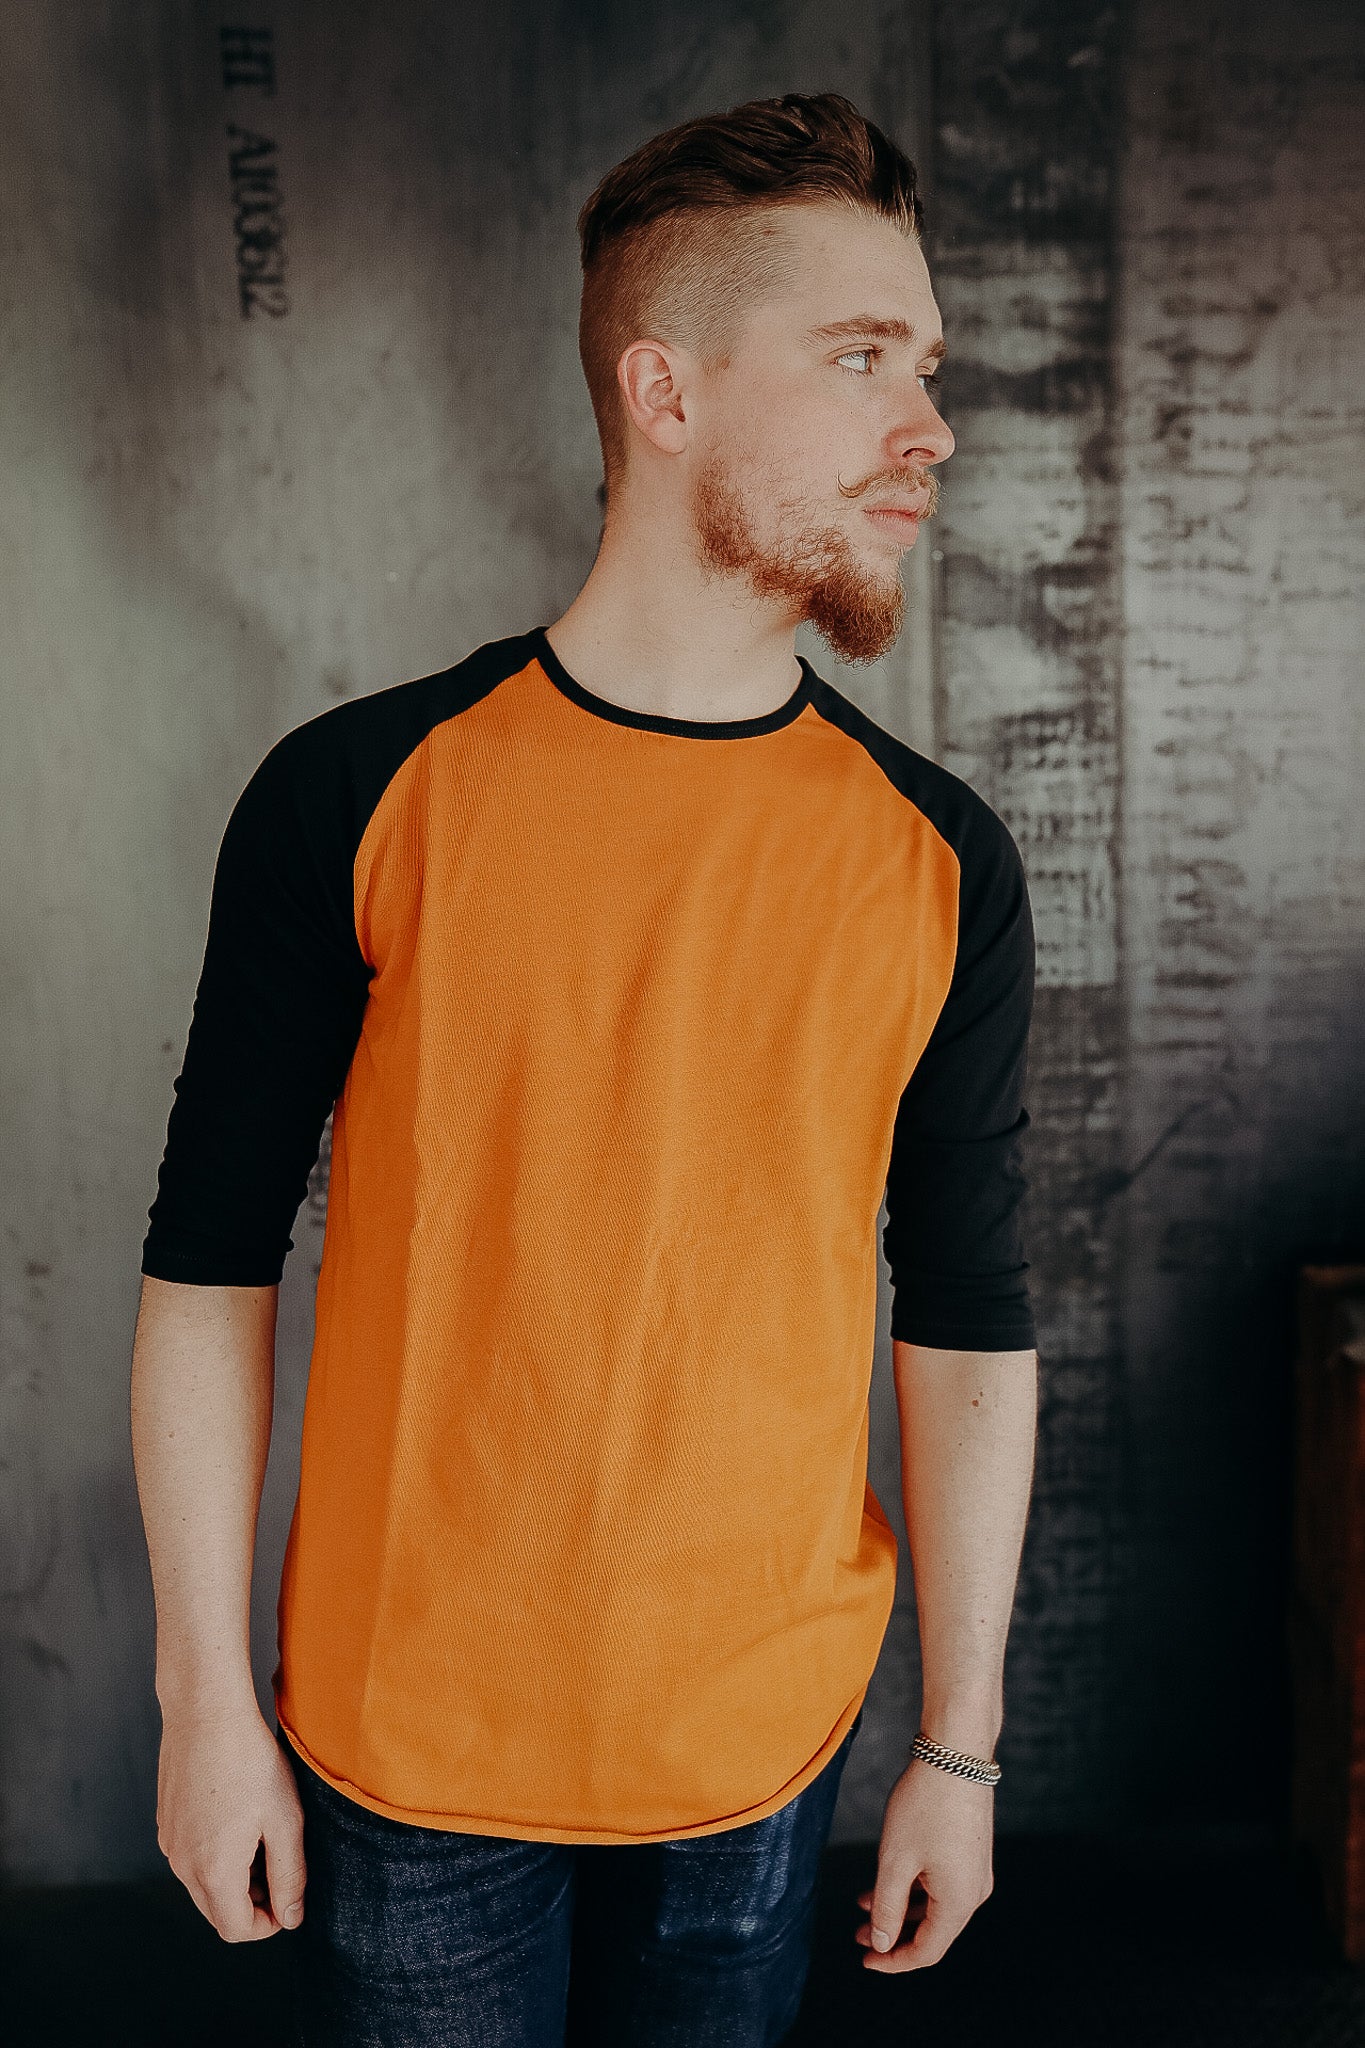 Leon Raglan Sweater- Orange / Marshall